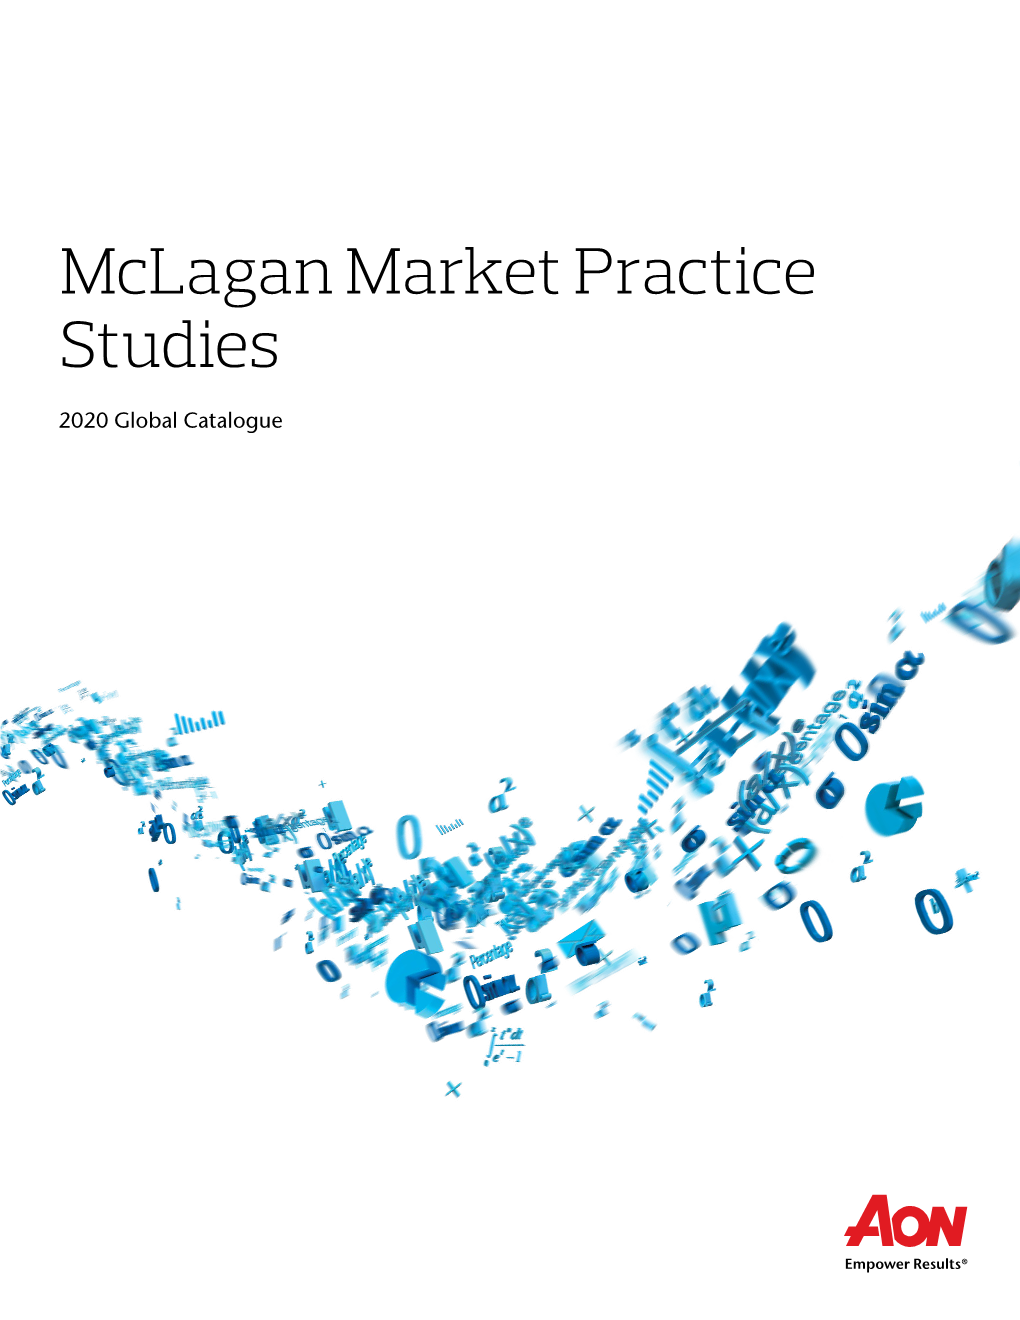 Mclagan Market Practice Studies